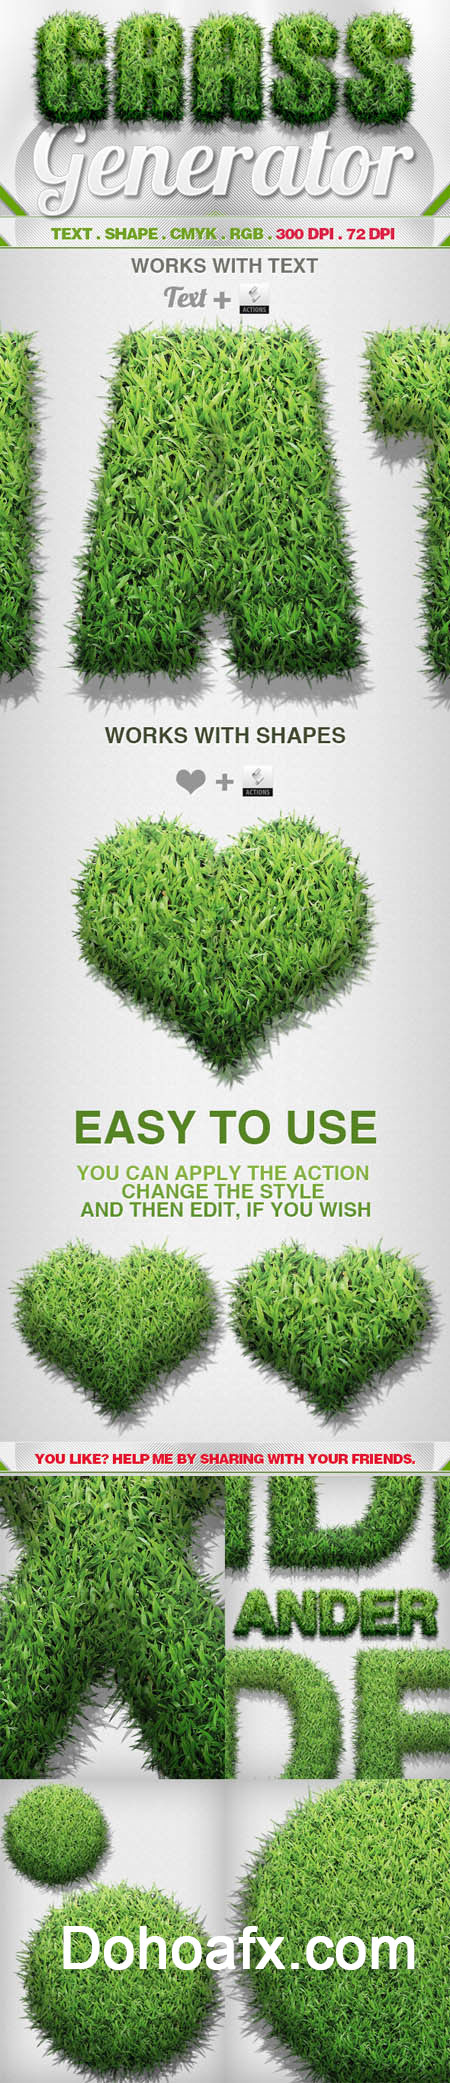 Tạo hiệu ứng mọc cỏ xanh cực nhanh bằng photoshop action